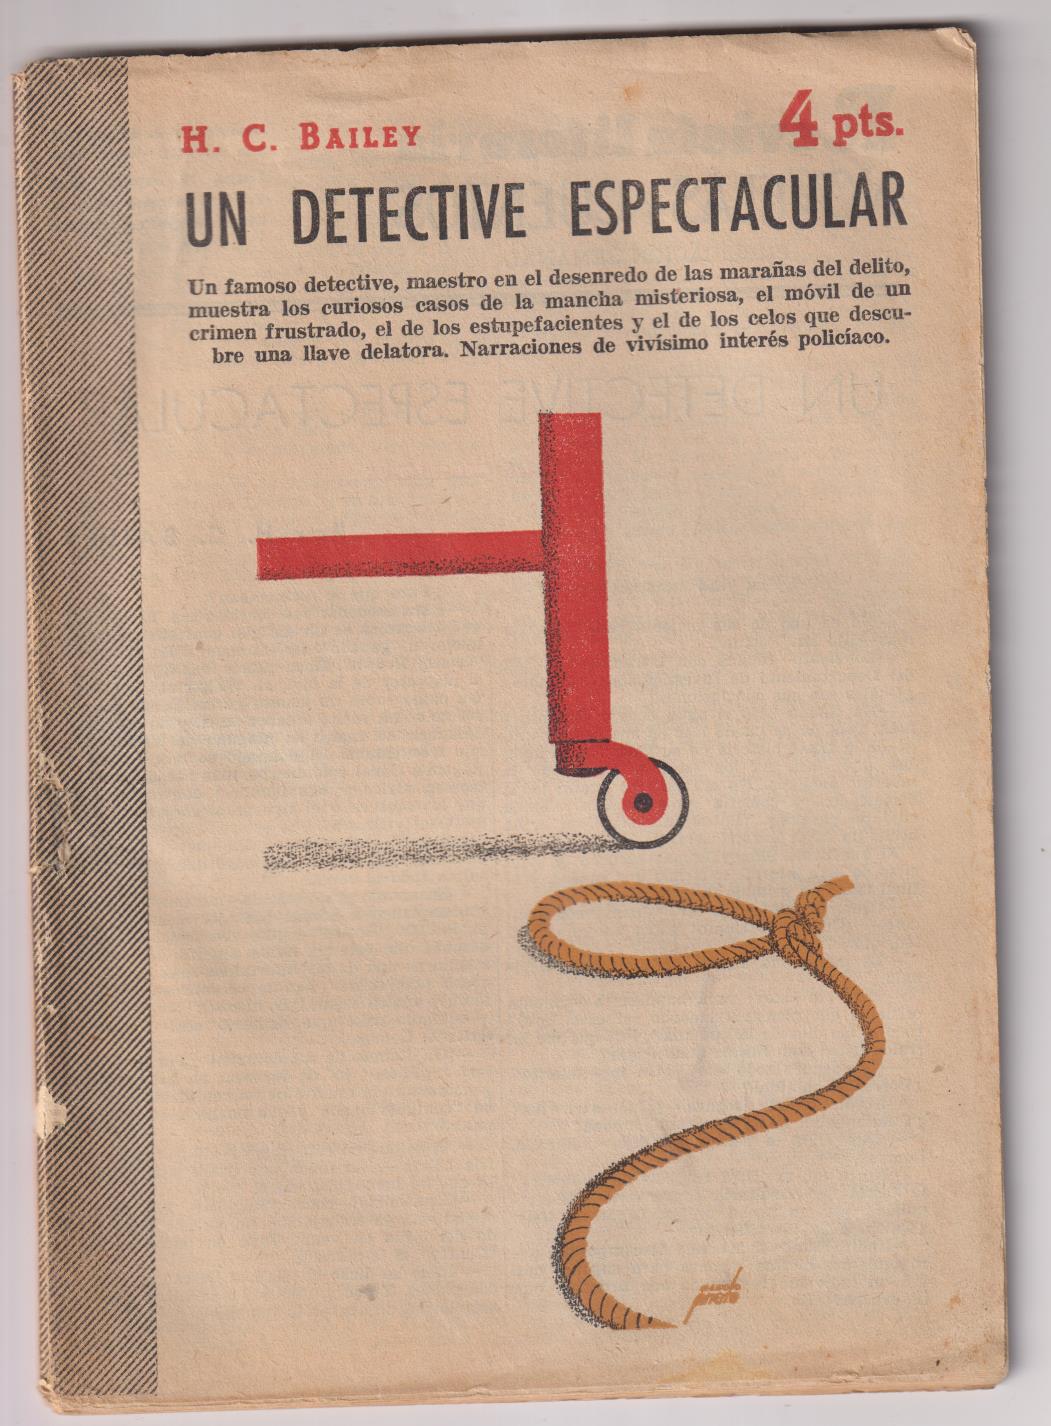 Revista literaria Novelas y Cuentos. Un detective espectacular por H.C. Bailey, año 1958